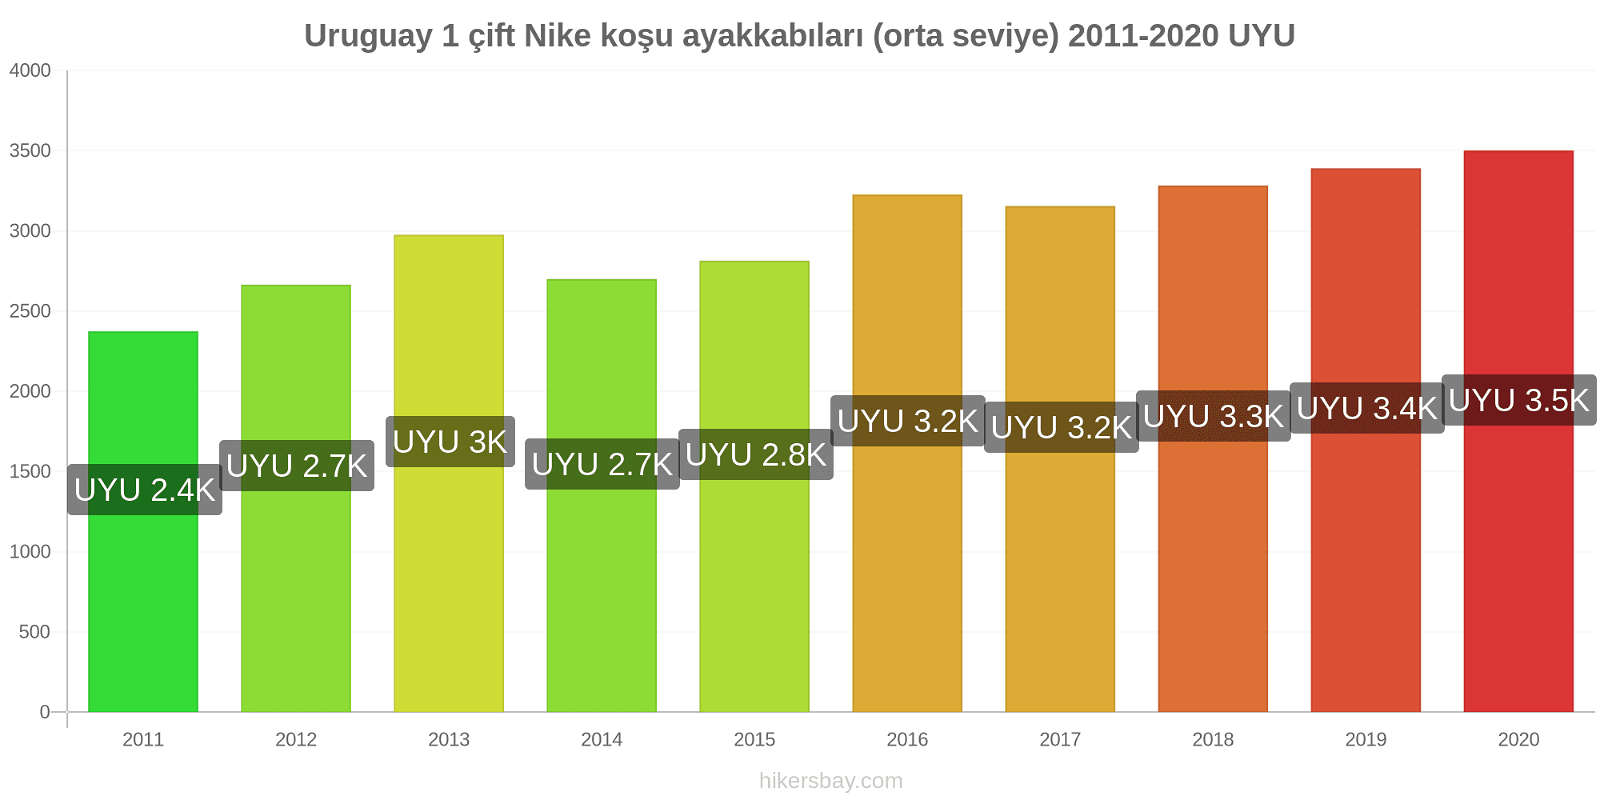 Uruguay fiyat değişiklikleri 1 çift Nike koşu ayakkabıları (orta seviye) hikersbay.com